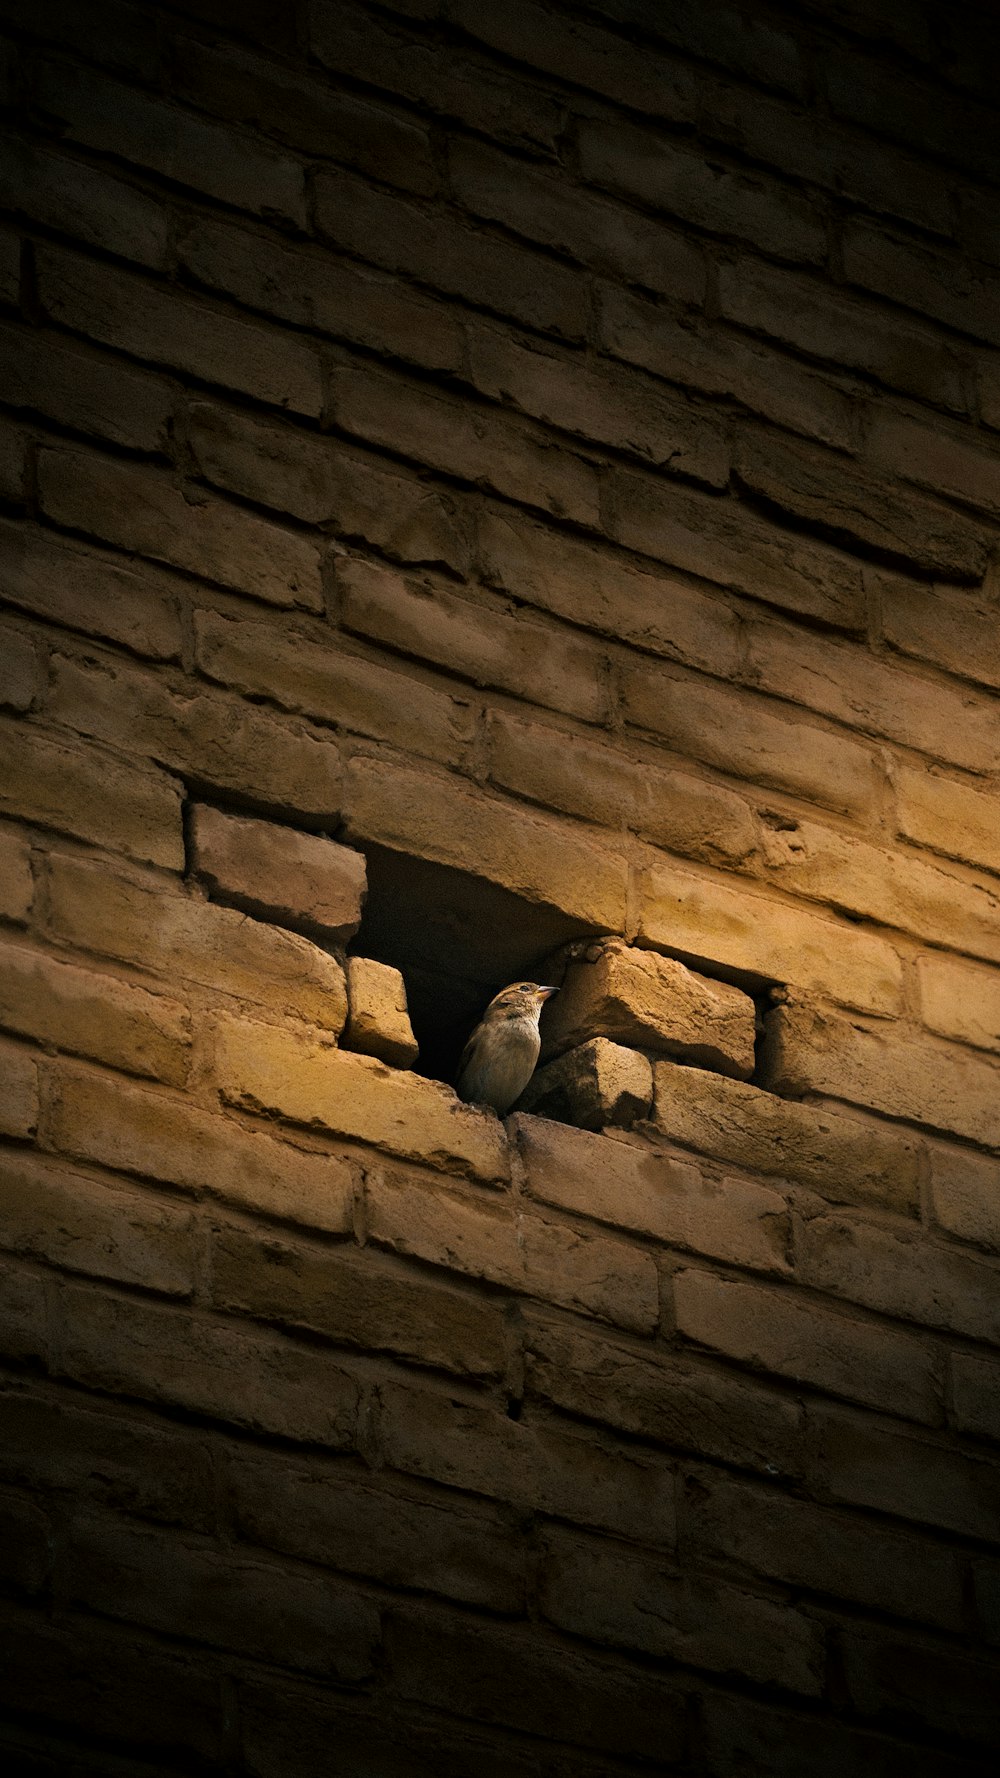 birds on a ledge